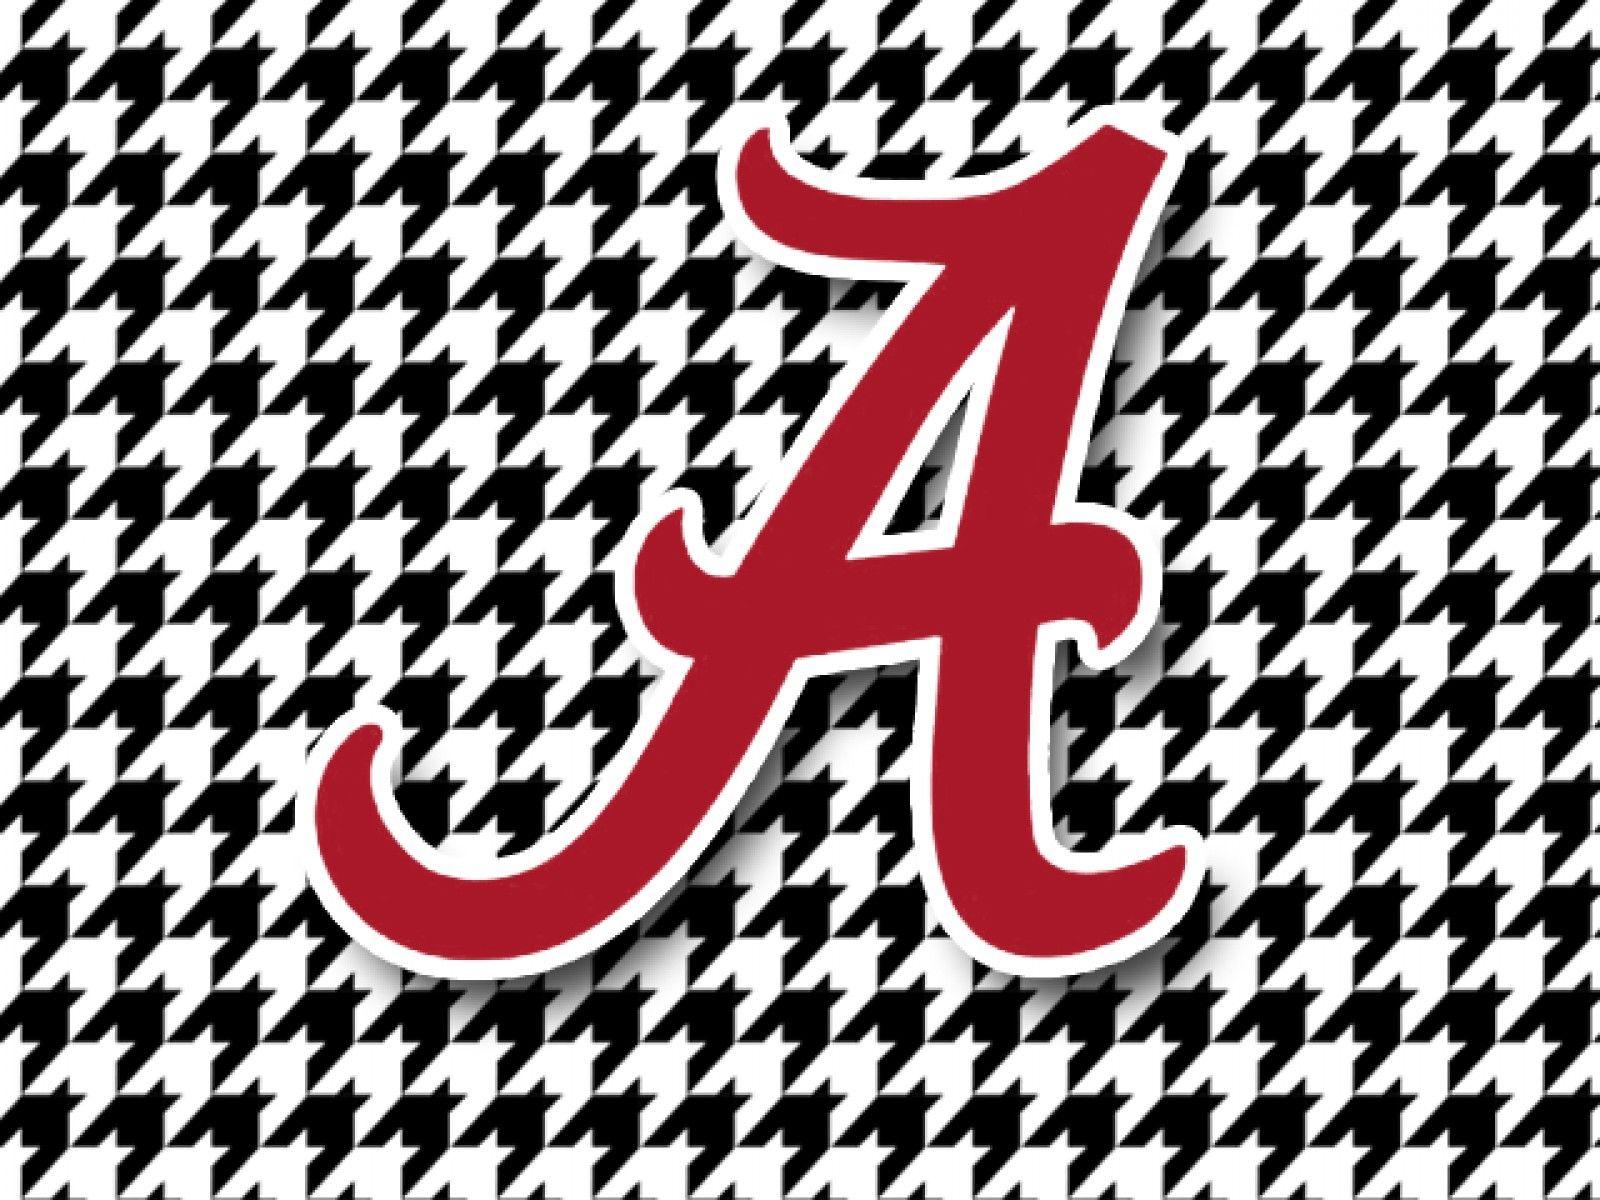 Black and White Bama Alabama Logo - Free University Of Alabama Logo, Download Free Clip Art, Free Clip